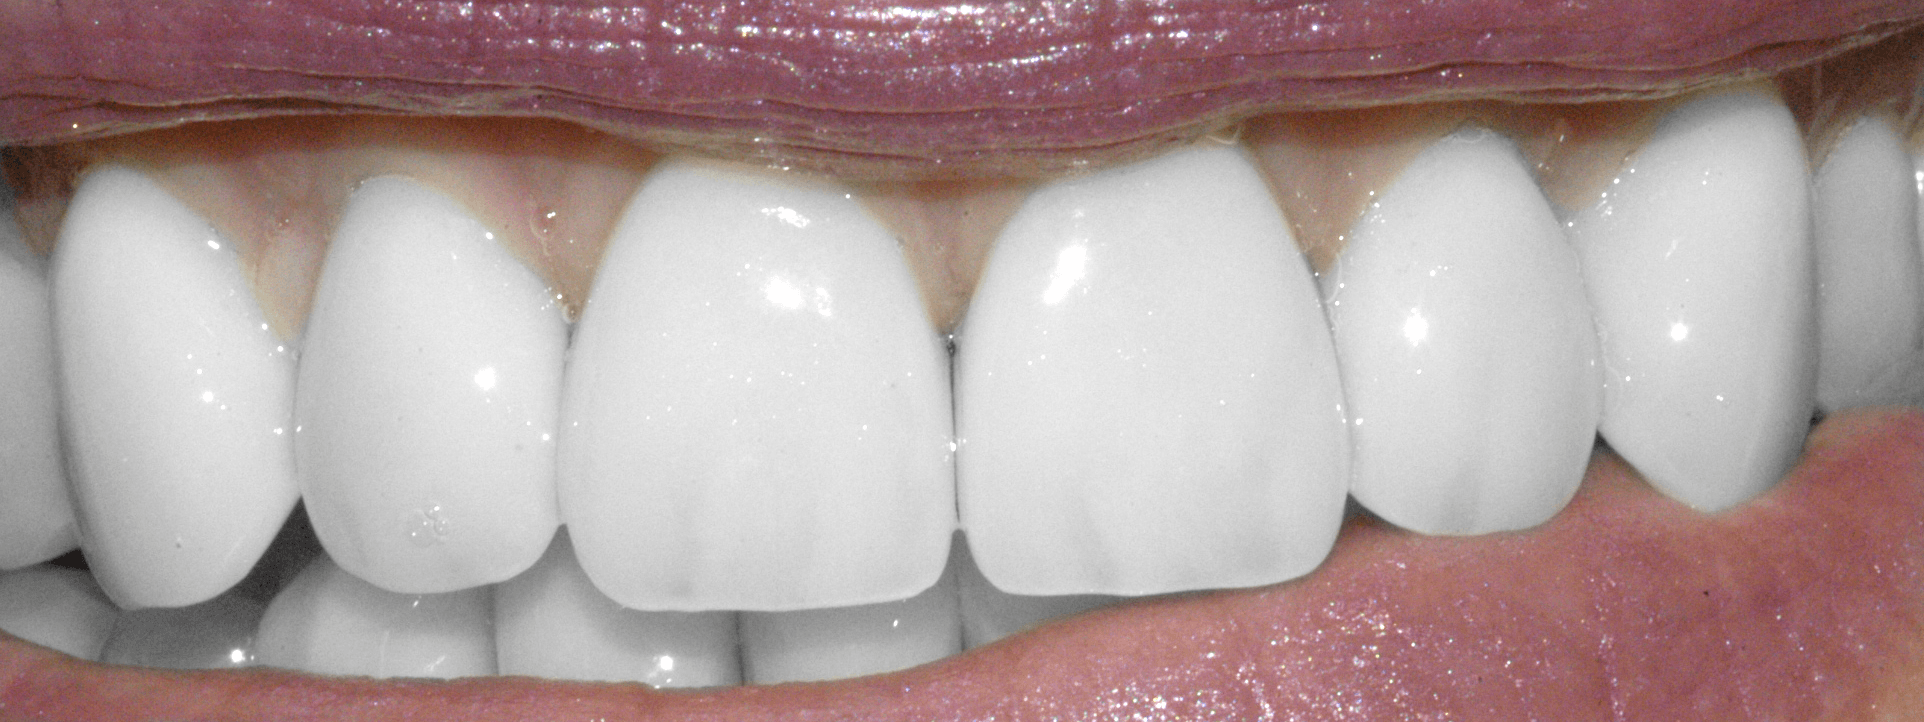 Grinding Those Teeth: Bruxism